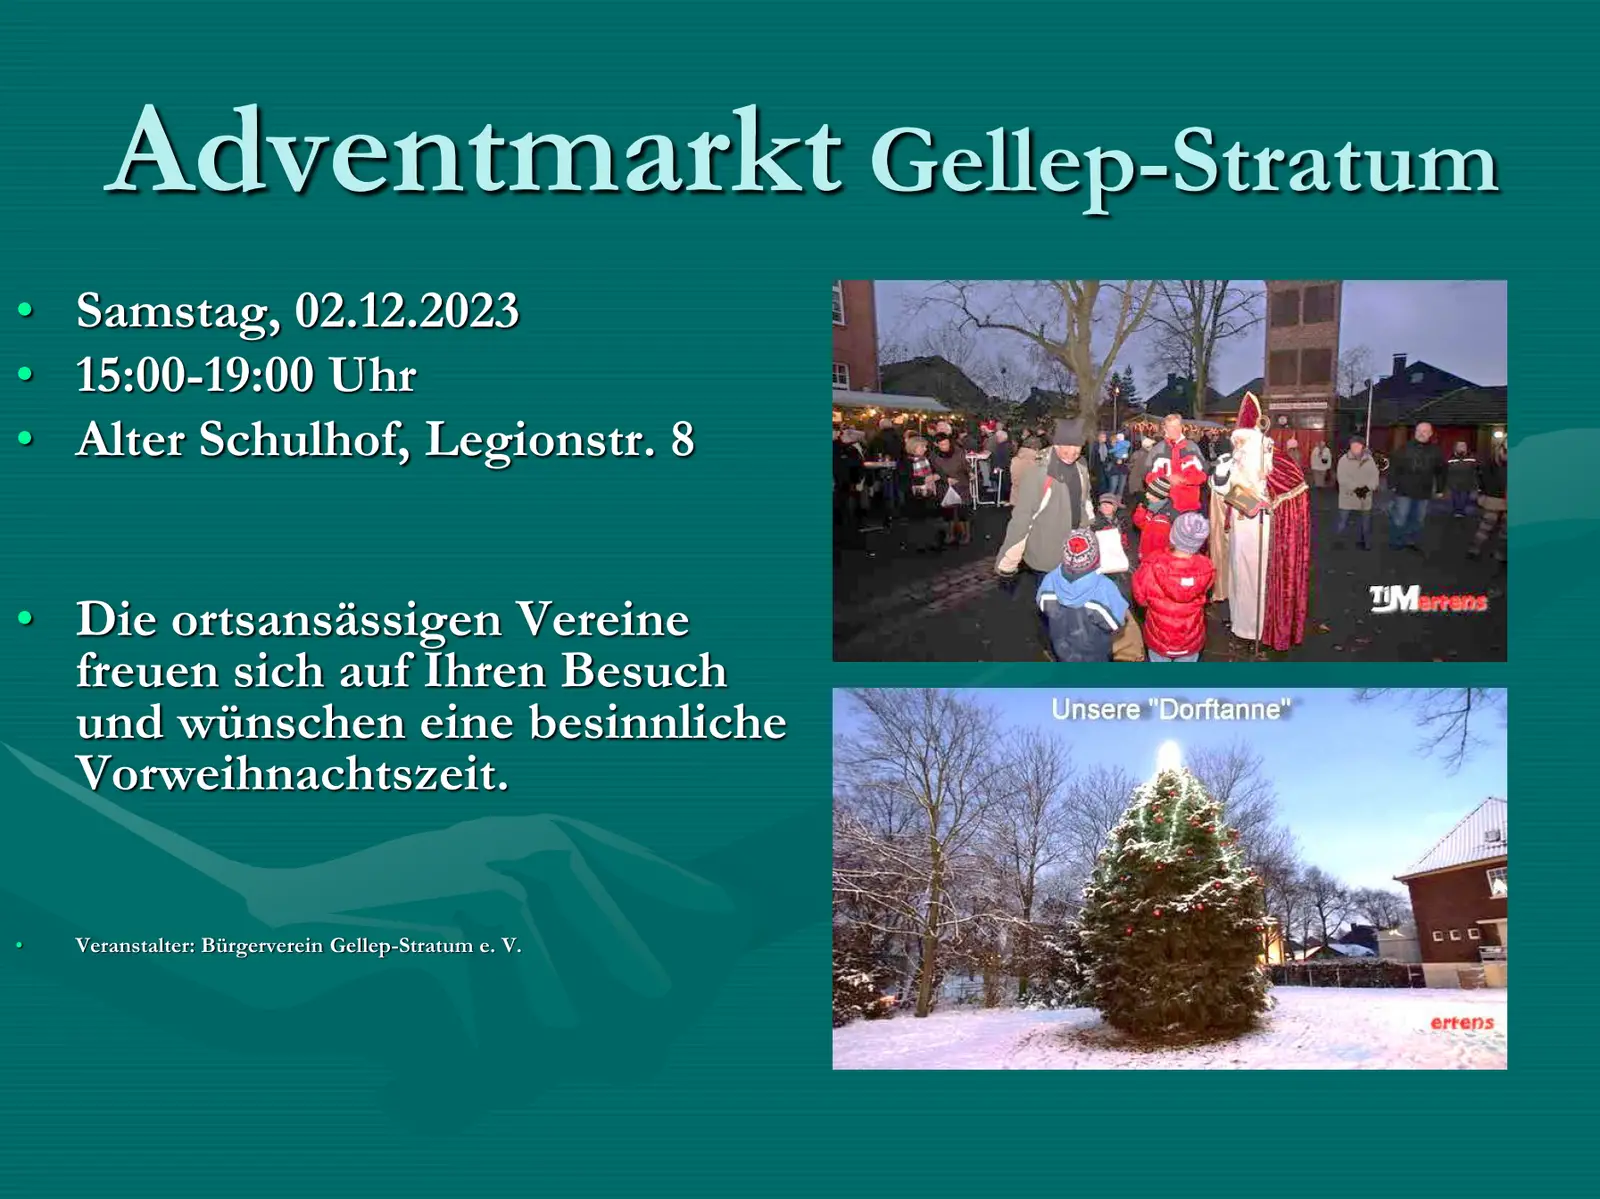 02.12.2023: Plakat mit den Informationen und Daten zum Adventmarkt